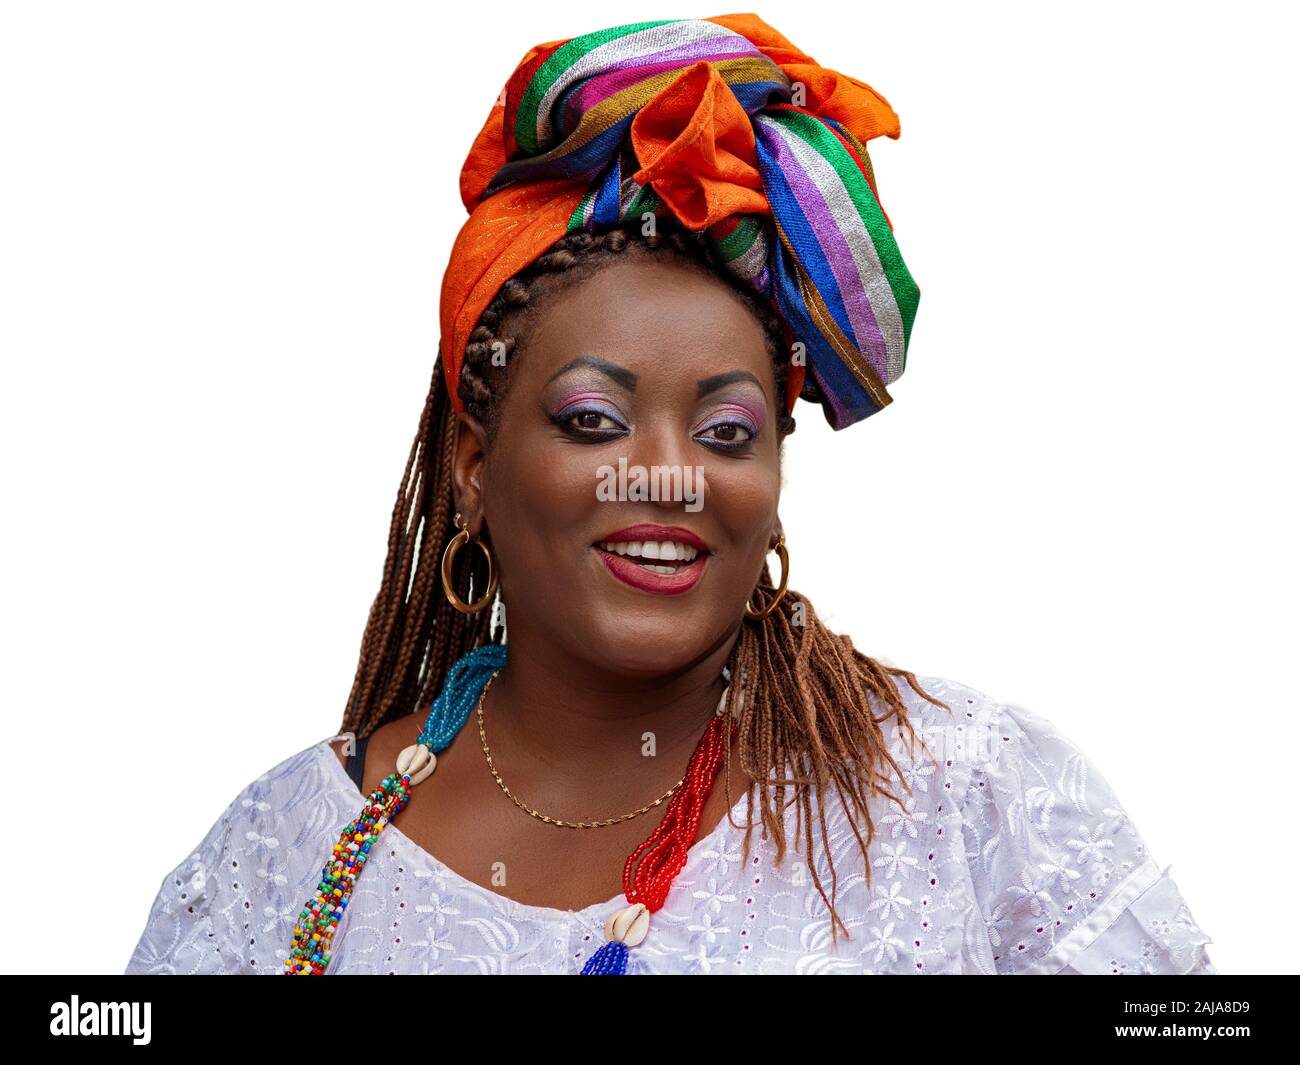 Heureuse femme brésilienne d'origine africaine habillés en costumes traditionnels Baiana, isolé sur fond blanc, Salvador da Bahia, Brésil. Banque D'Images